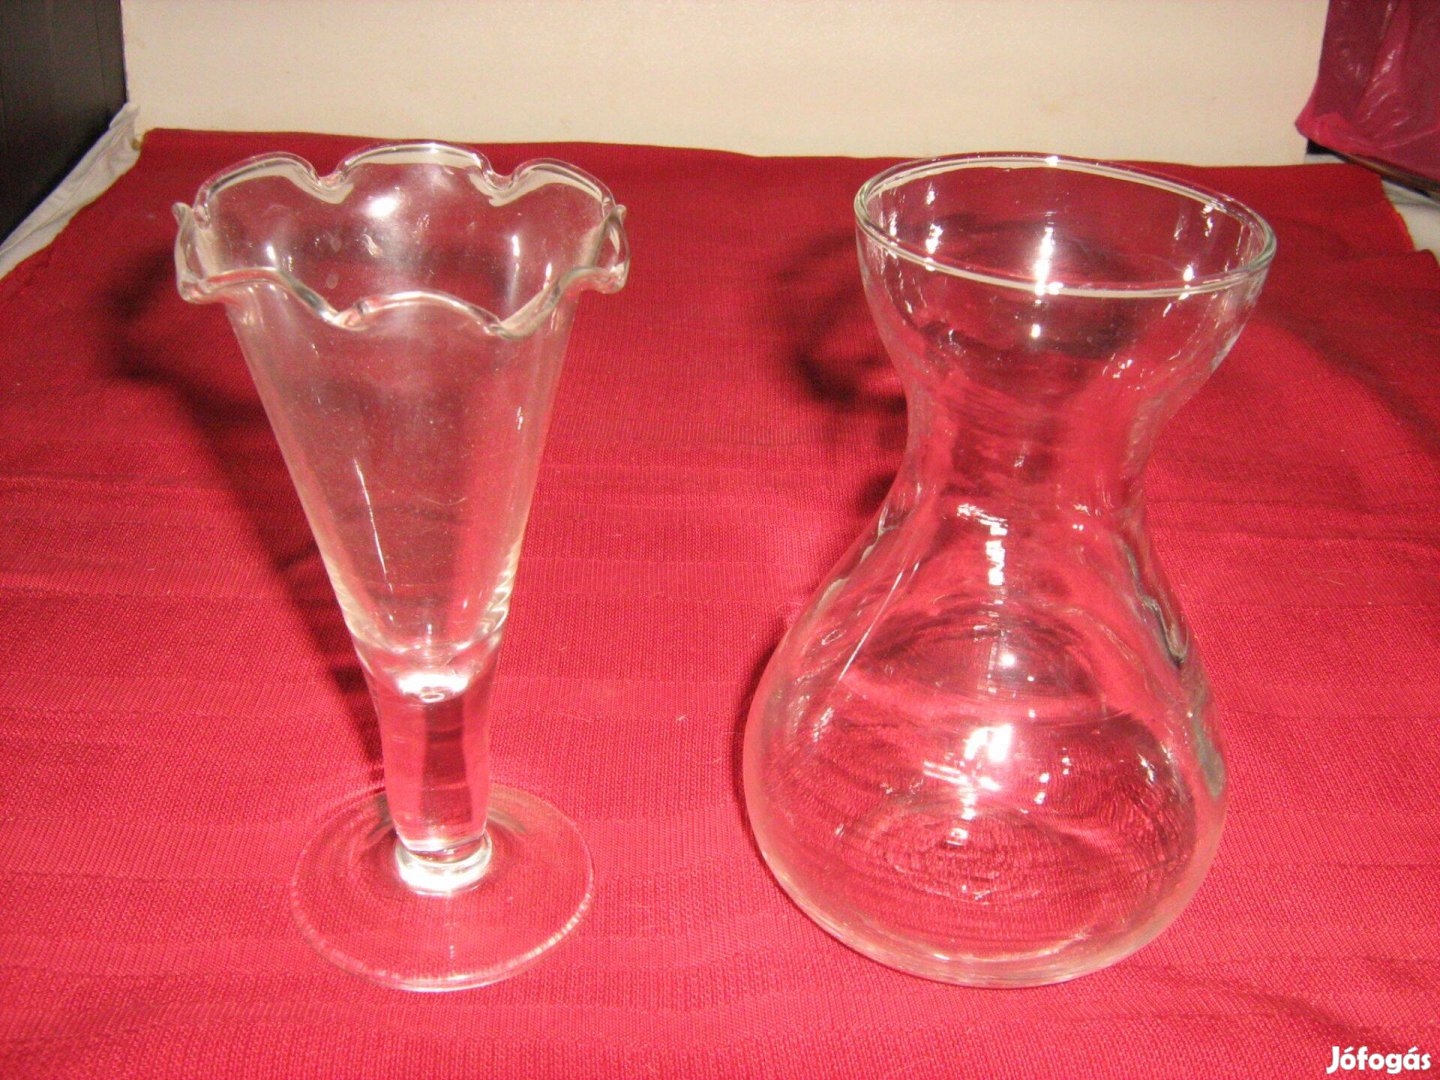 Üveg vázák, 2 db, kicsik, egy is vehető